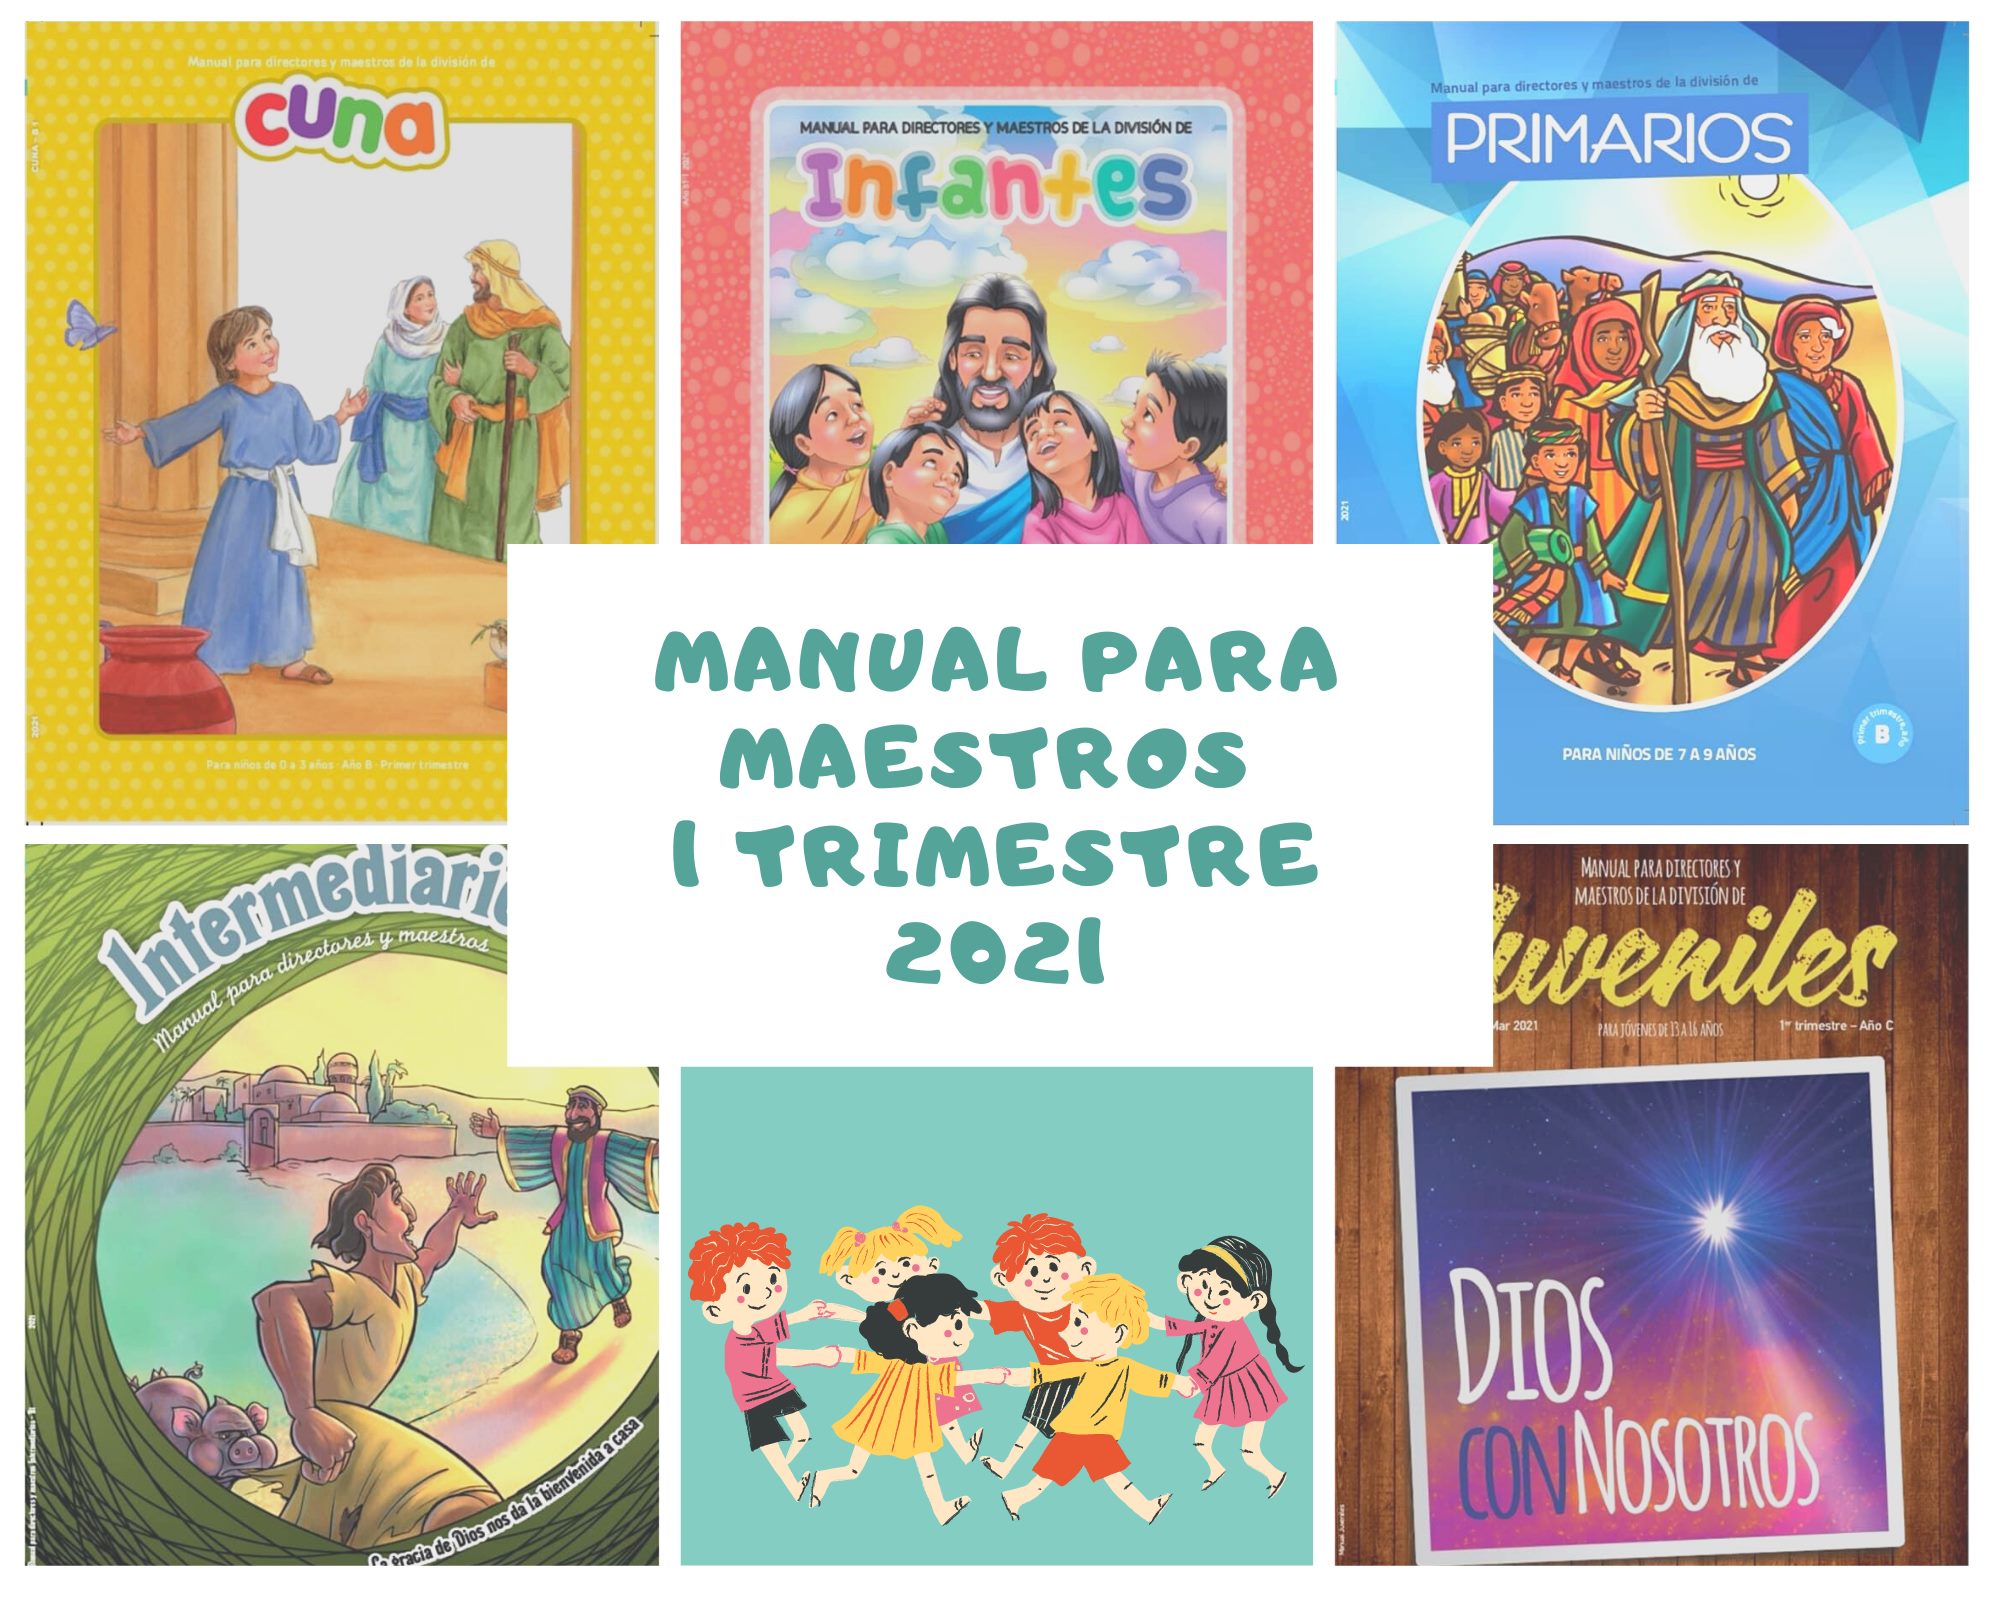 Manuales para maestros | Cuna - Infantes - Primarios - Menores - Juvenil |  Primer trimestre 2021 PDF - Tu Espacio Joven